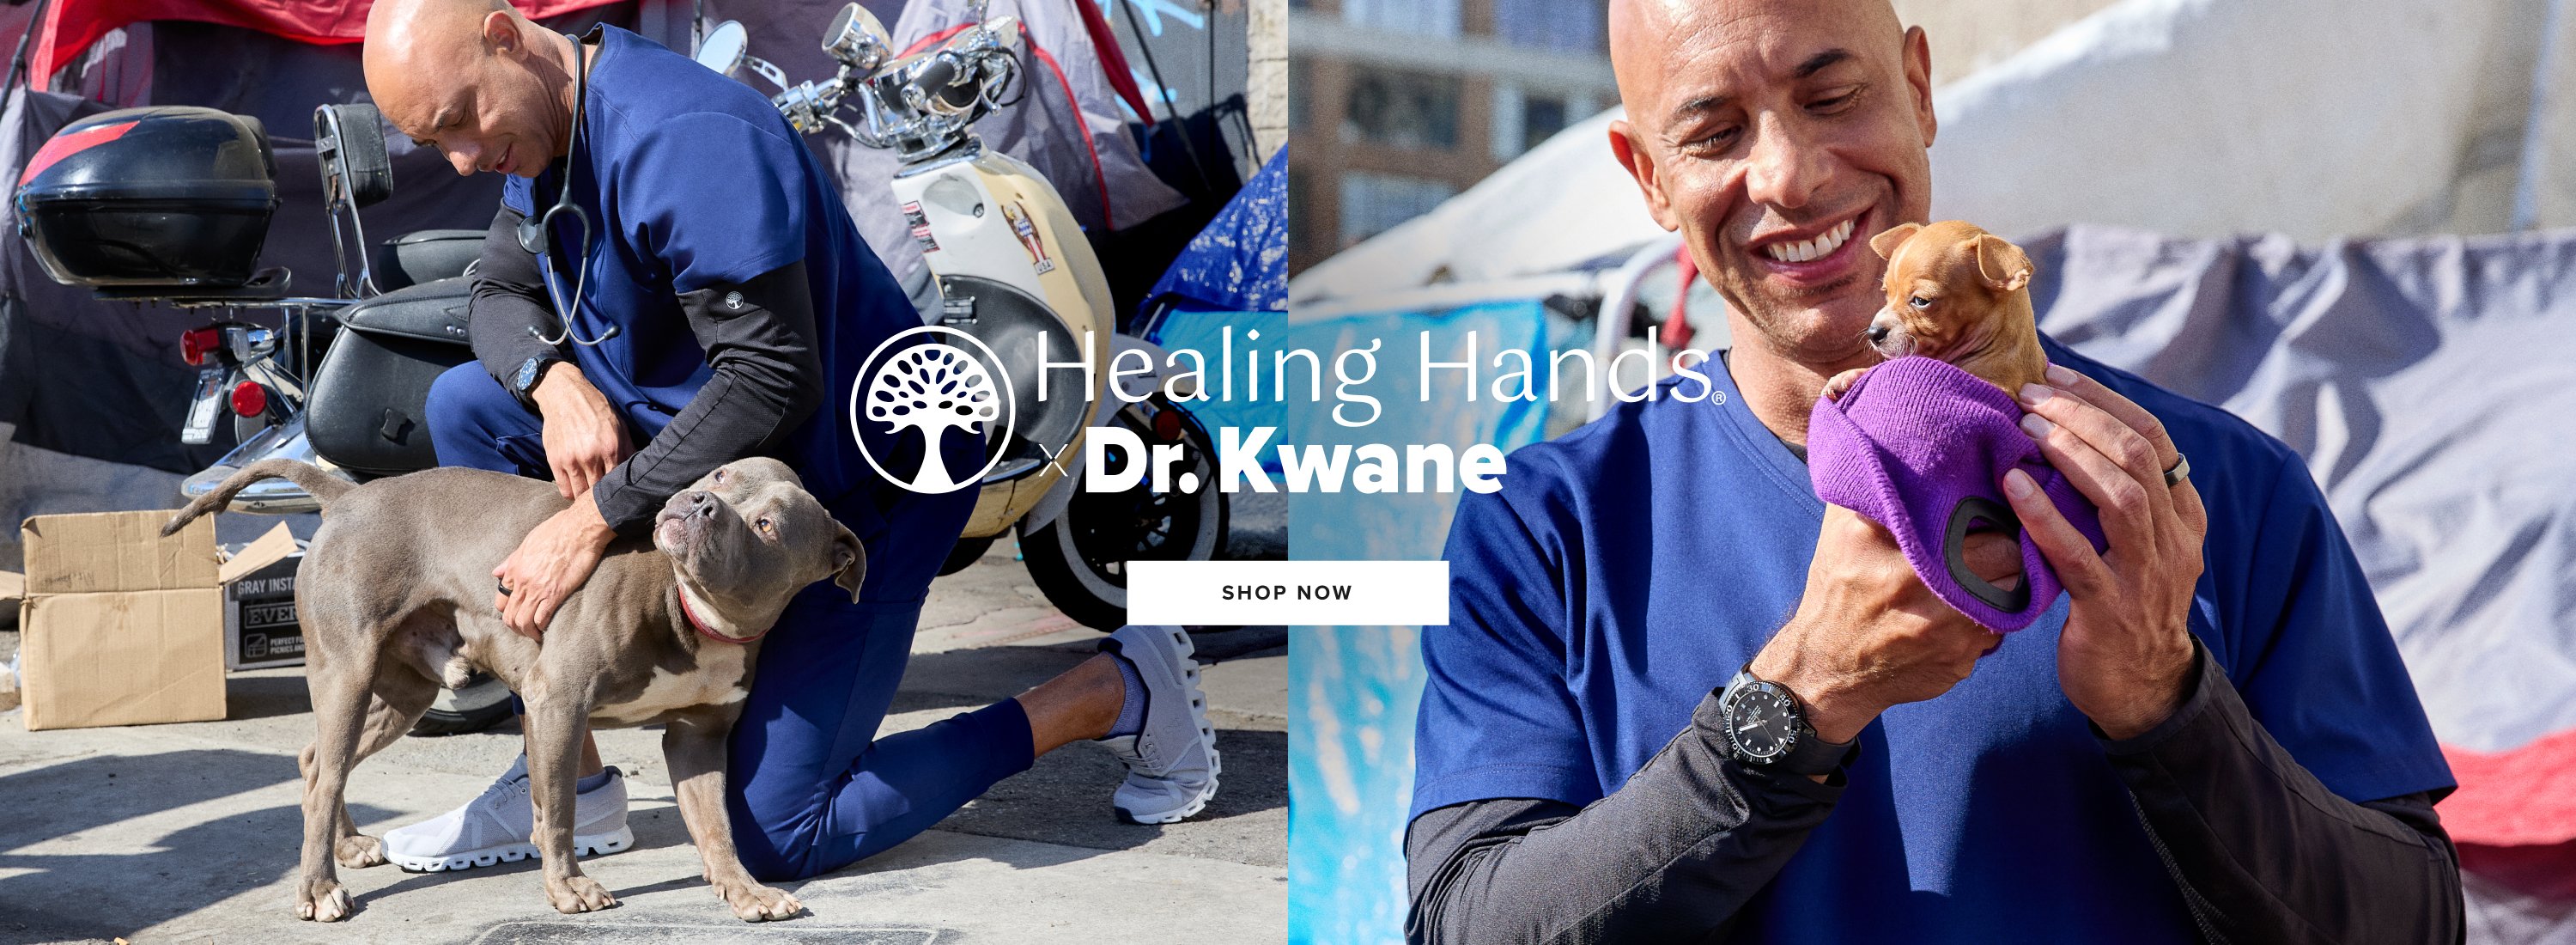 Healing Hands
x Dr. Kwane